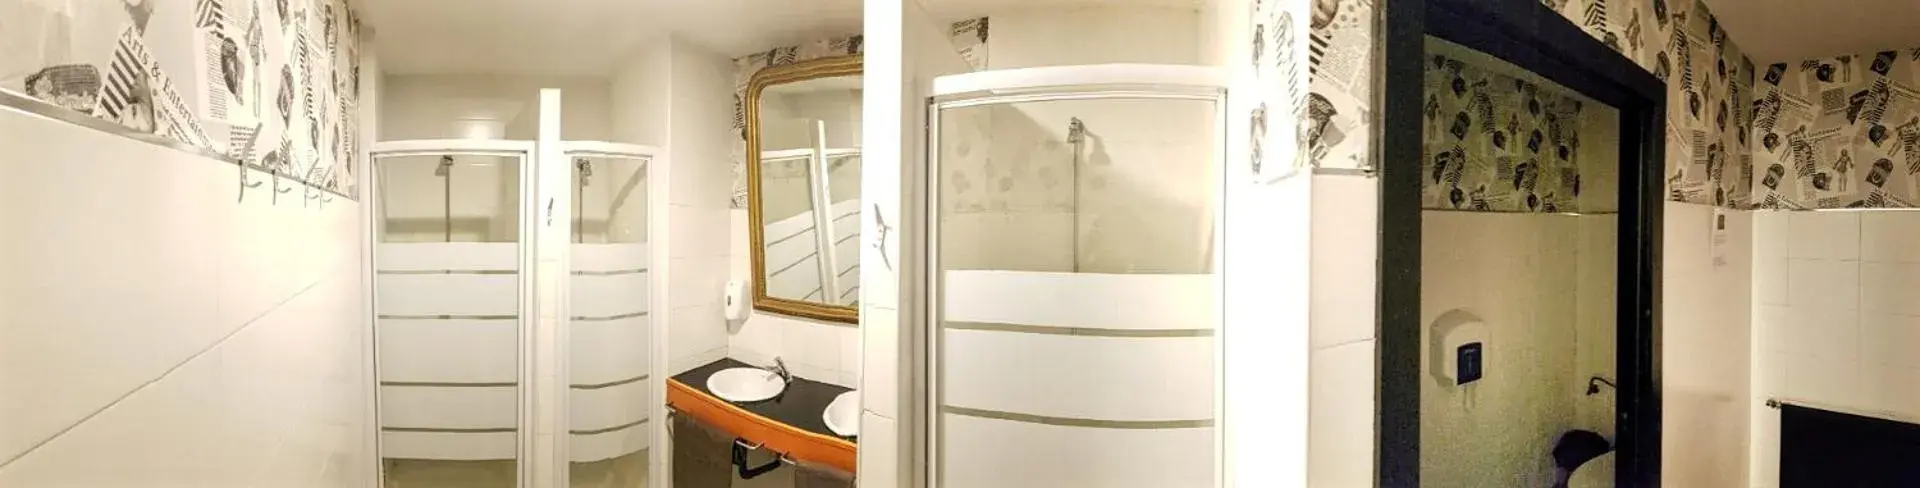 Shower, Bathroom in Hostels Meetingpoint